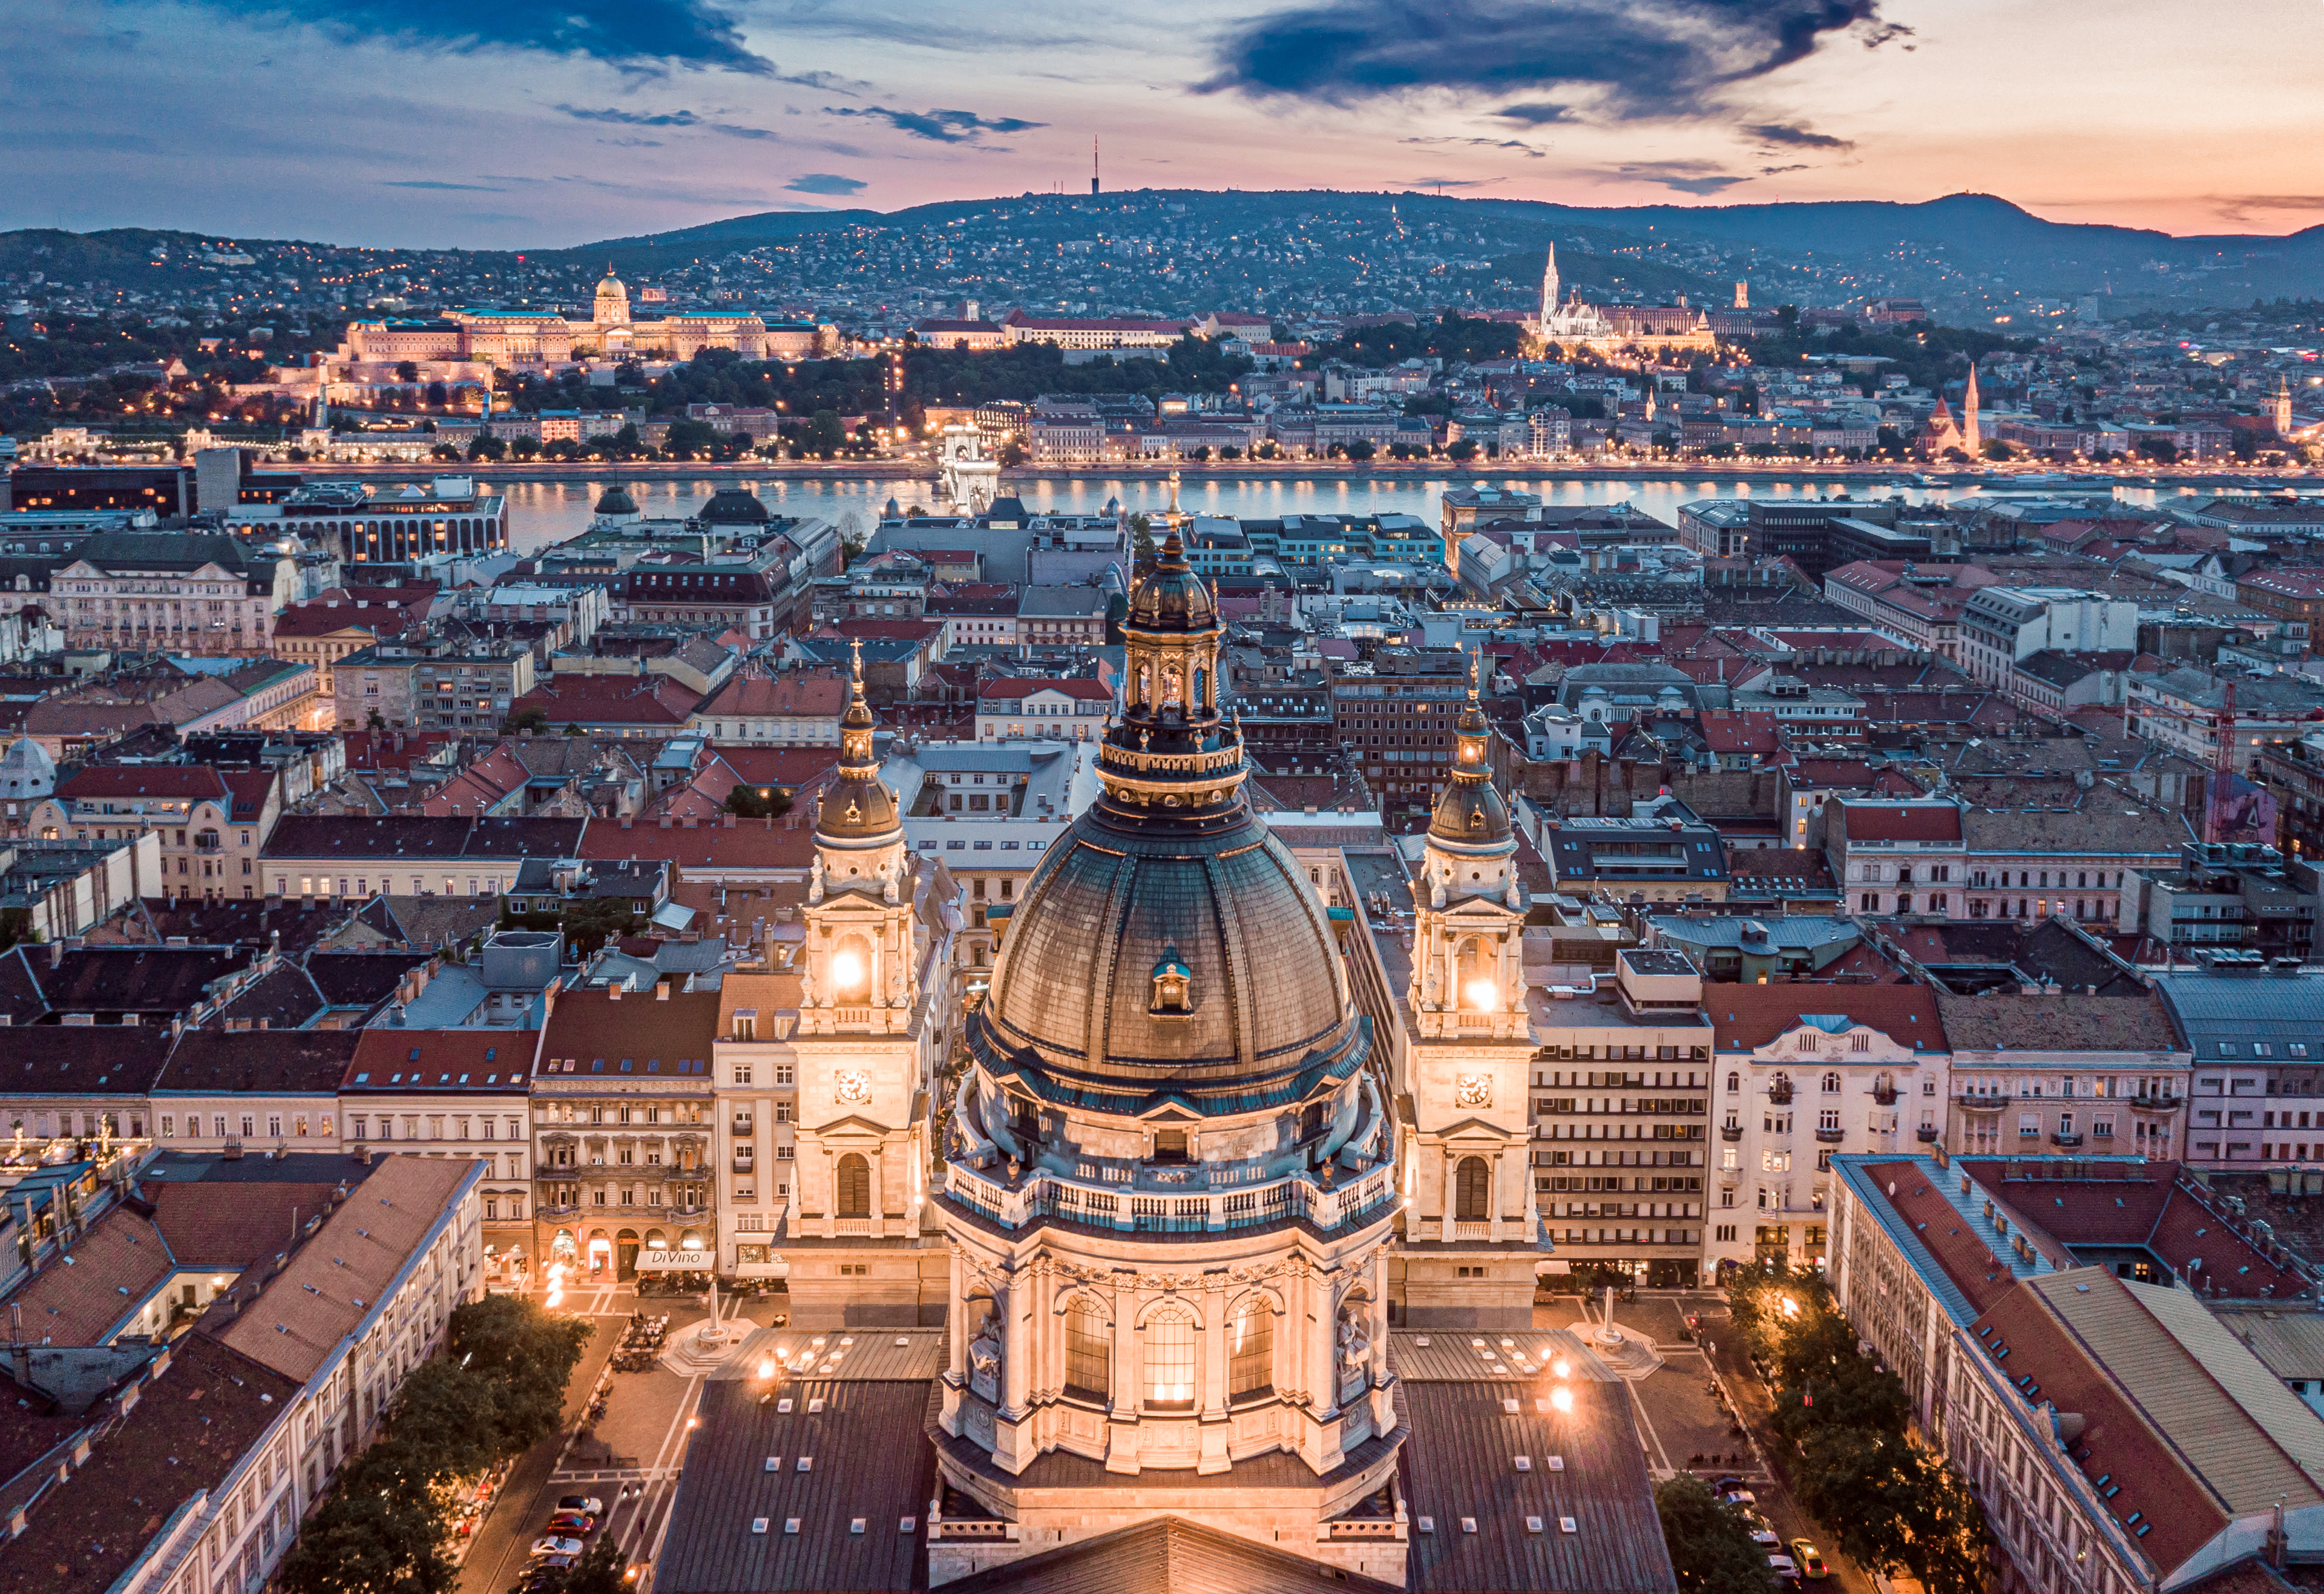 Будапешт - столица Венгрии, недвижимость в которой могут купить иностранцы